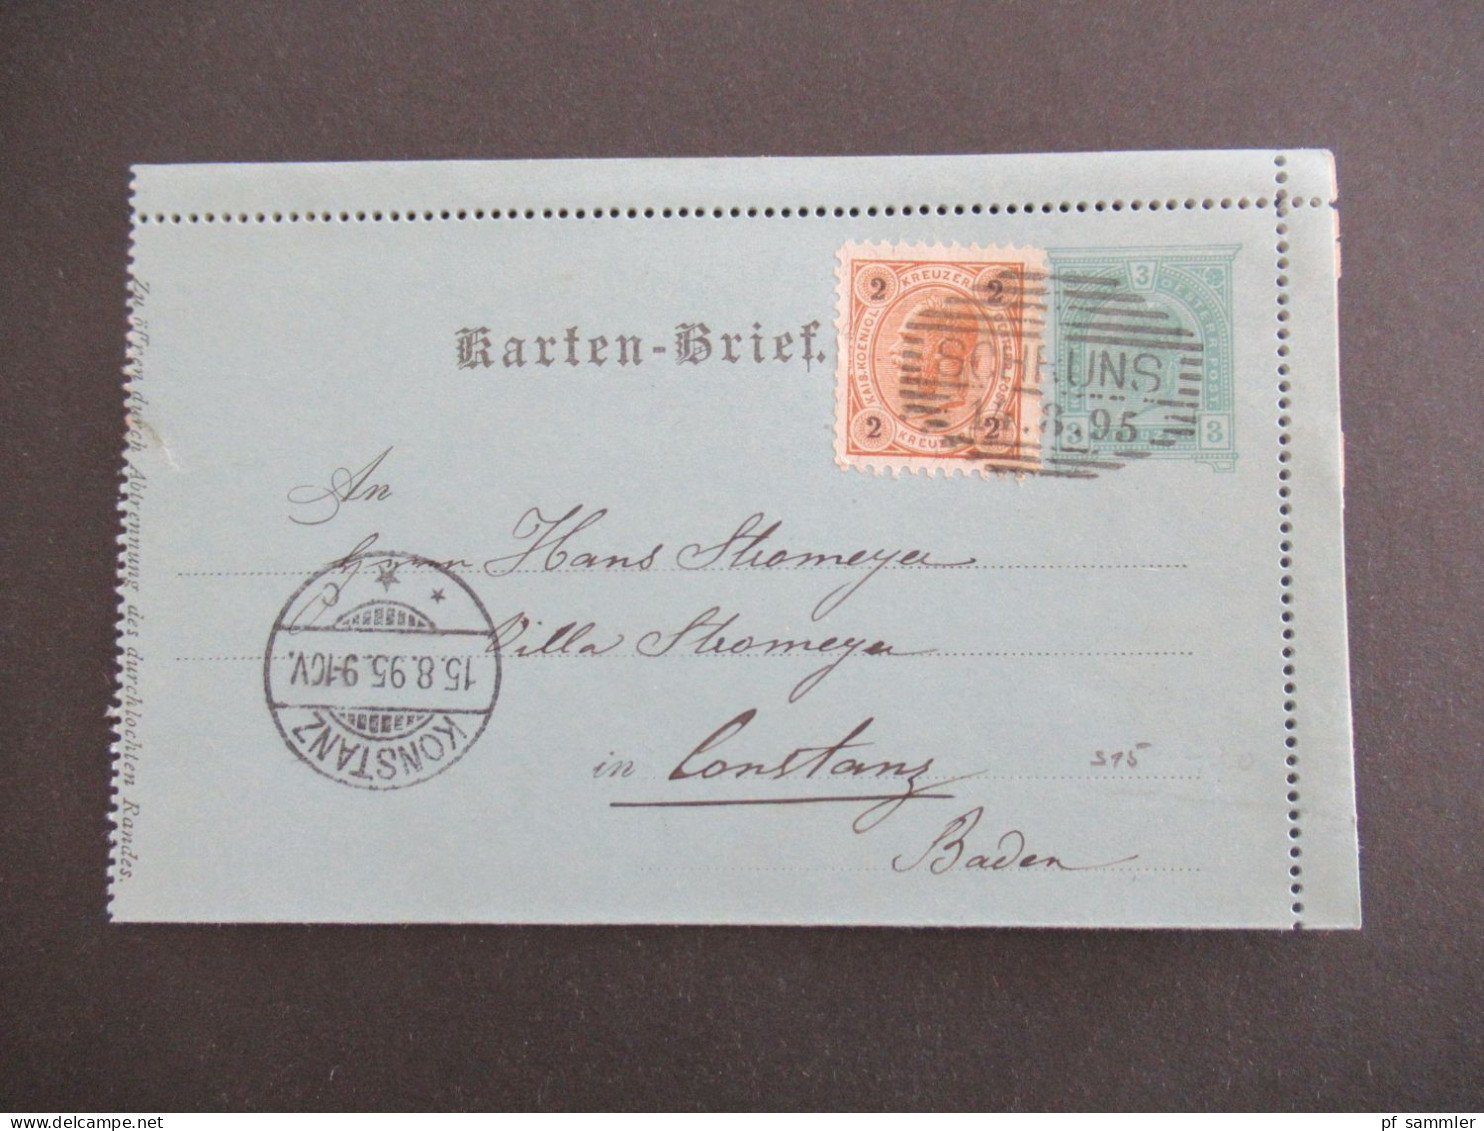 Österreich 1895 Kartenbrief 3 Kreuzer Mit 2 Kreuzer Zusatzfrankatur Strichstempel Schruns - Konstanz Villa Stromeyer - Cartes-lettres